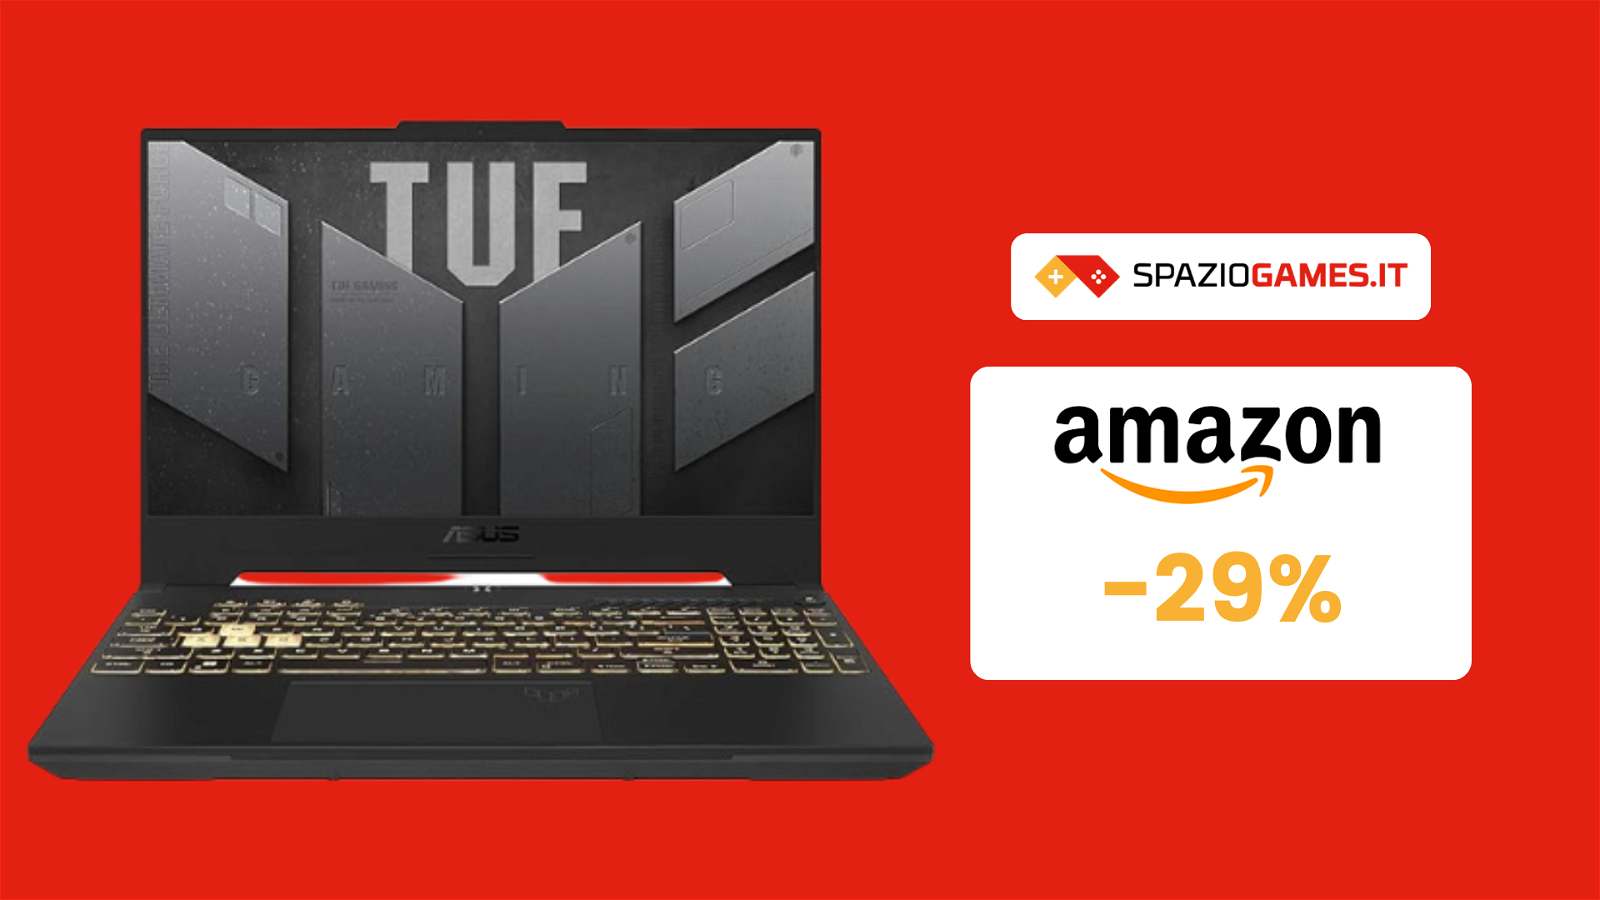 Notebook Asus TUF Gaming con uno SCONTO mai visto del 29%!